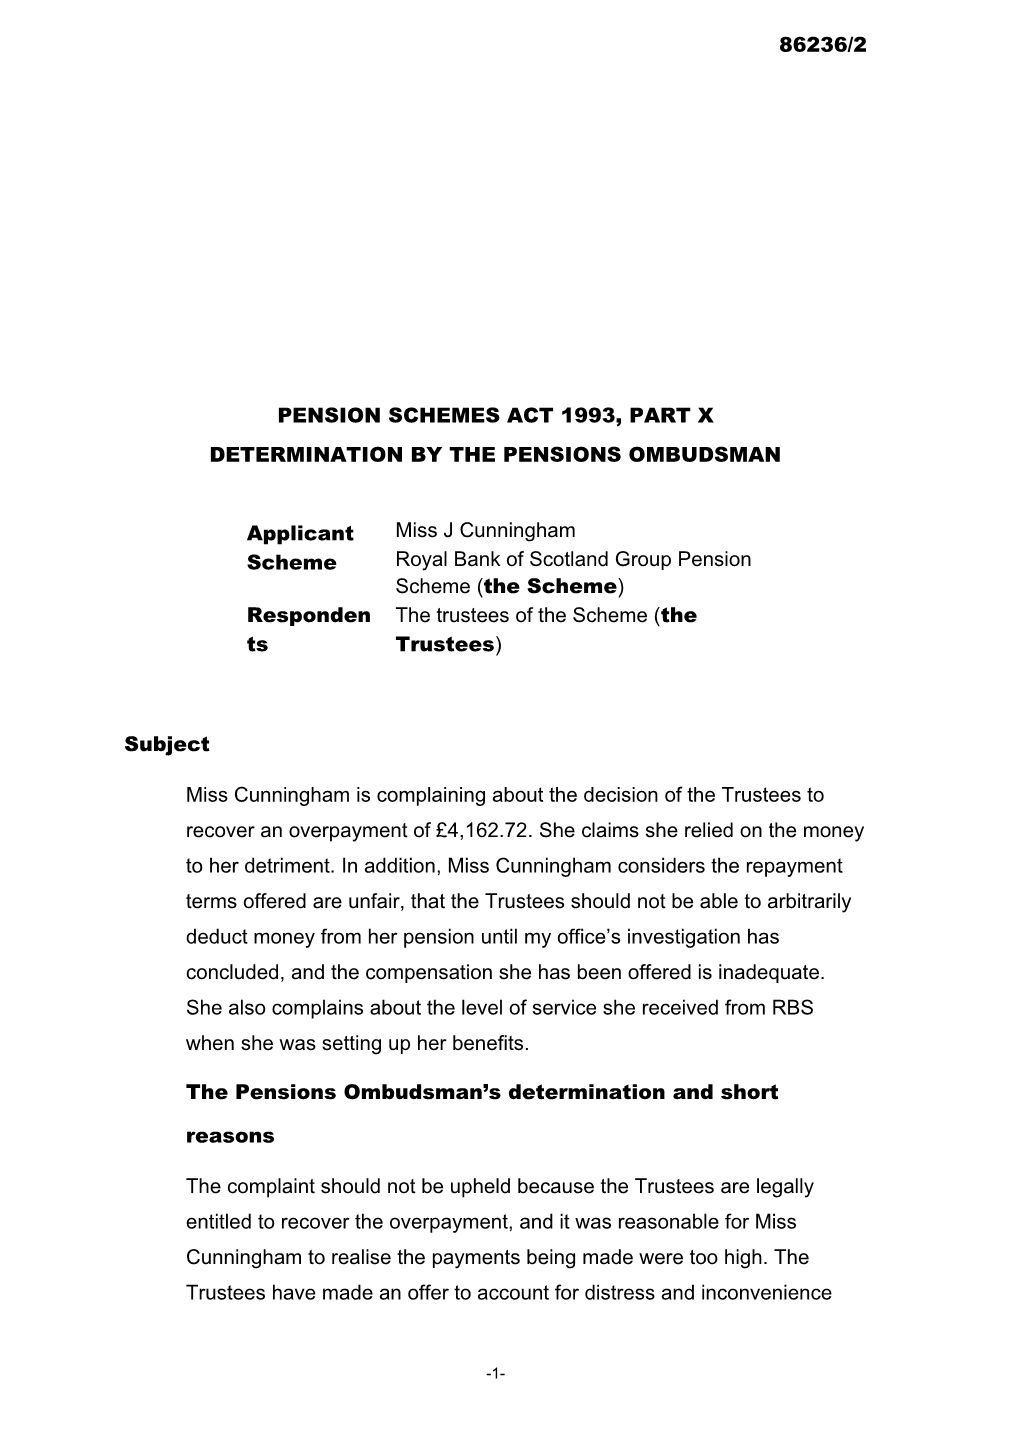 Pension Schemes Act 1993, Part X s119